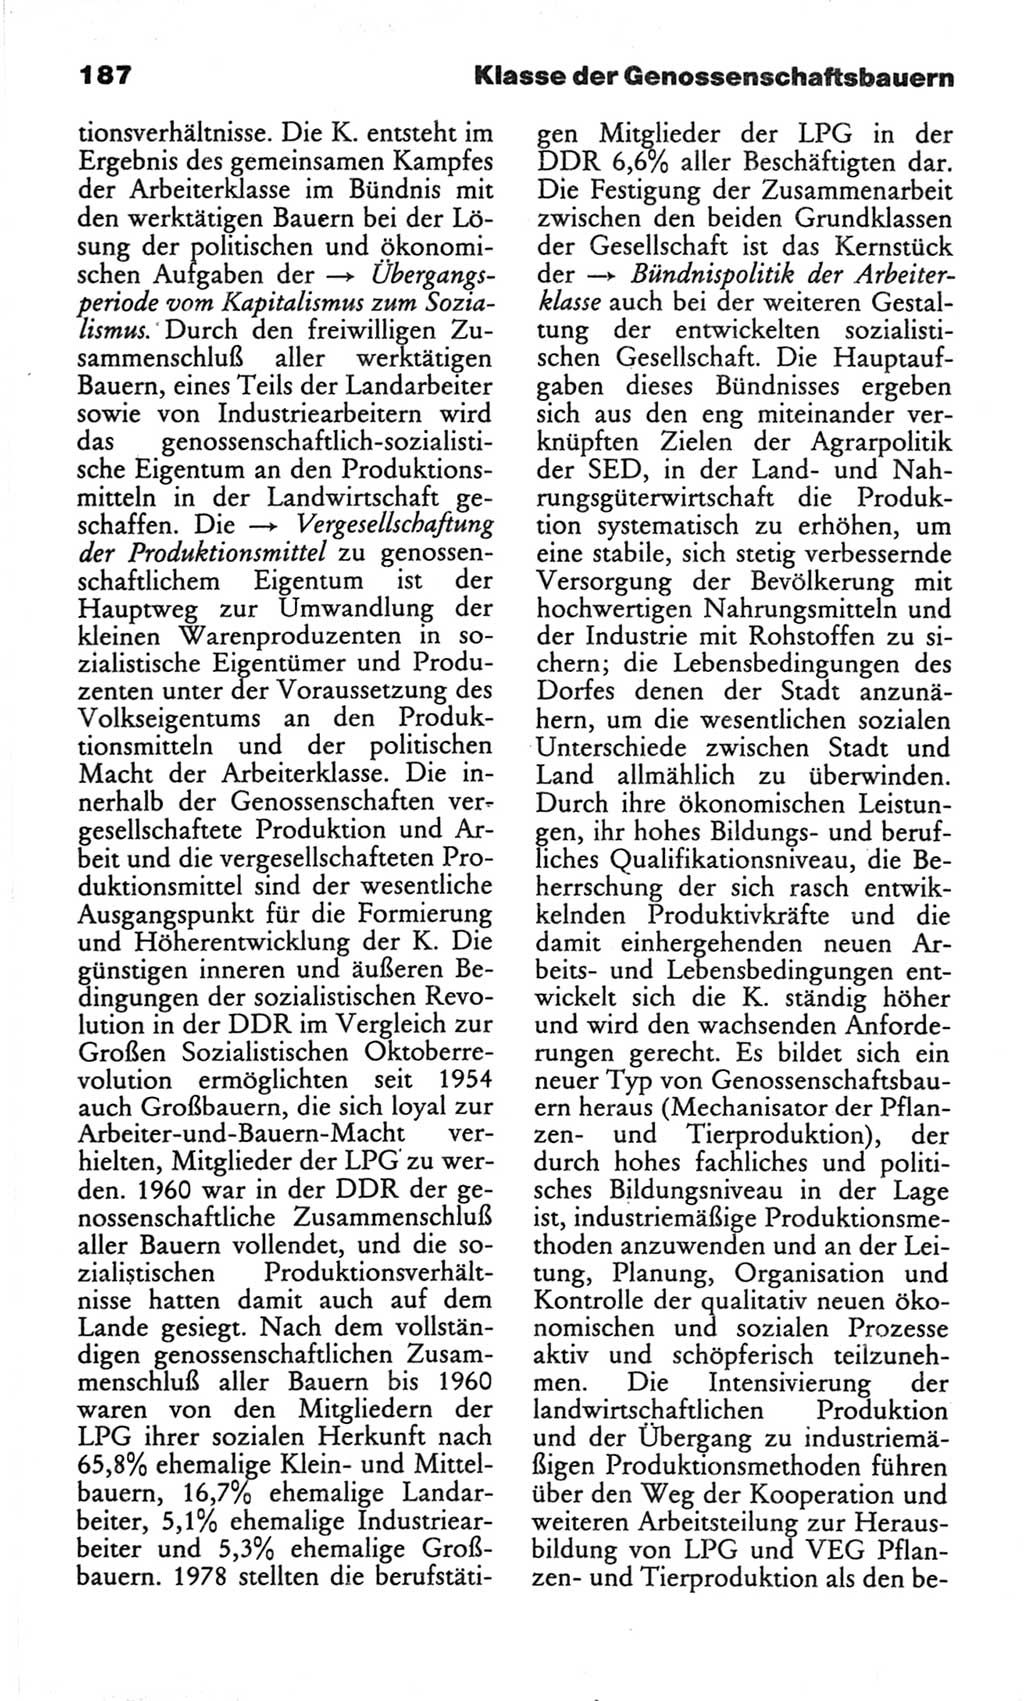 Wörterbuch des wissenschaftlichen Kommunismus [Deutsche Demokratische Republik (DDR)] 1982, Seite 187 (Wb. wiss. Komm. DDR 1982, S. 187)